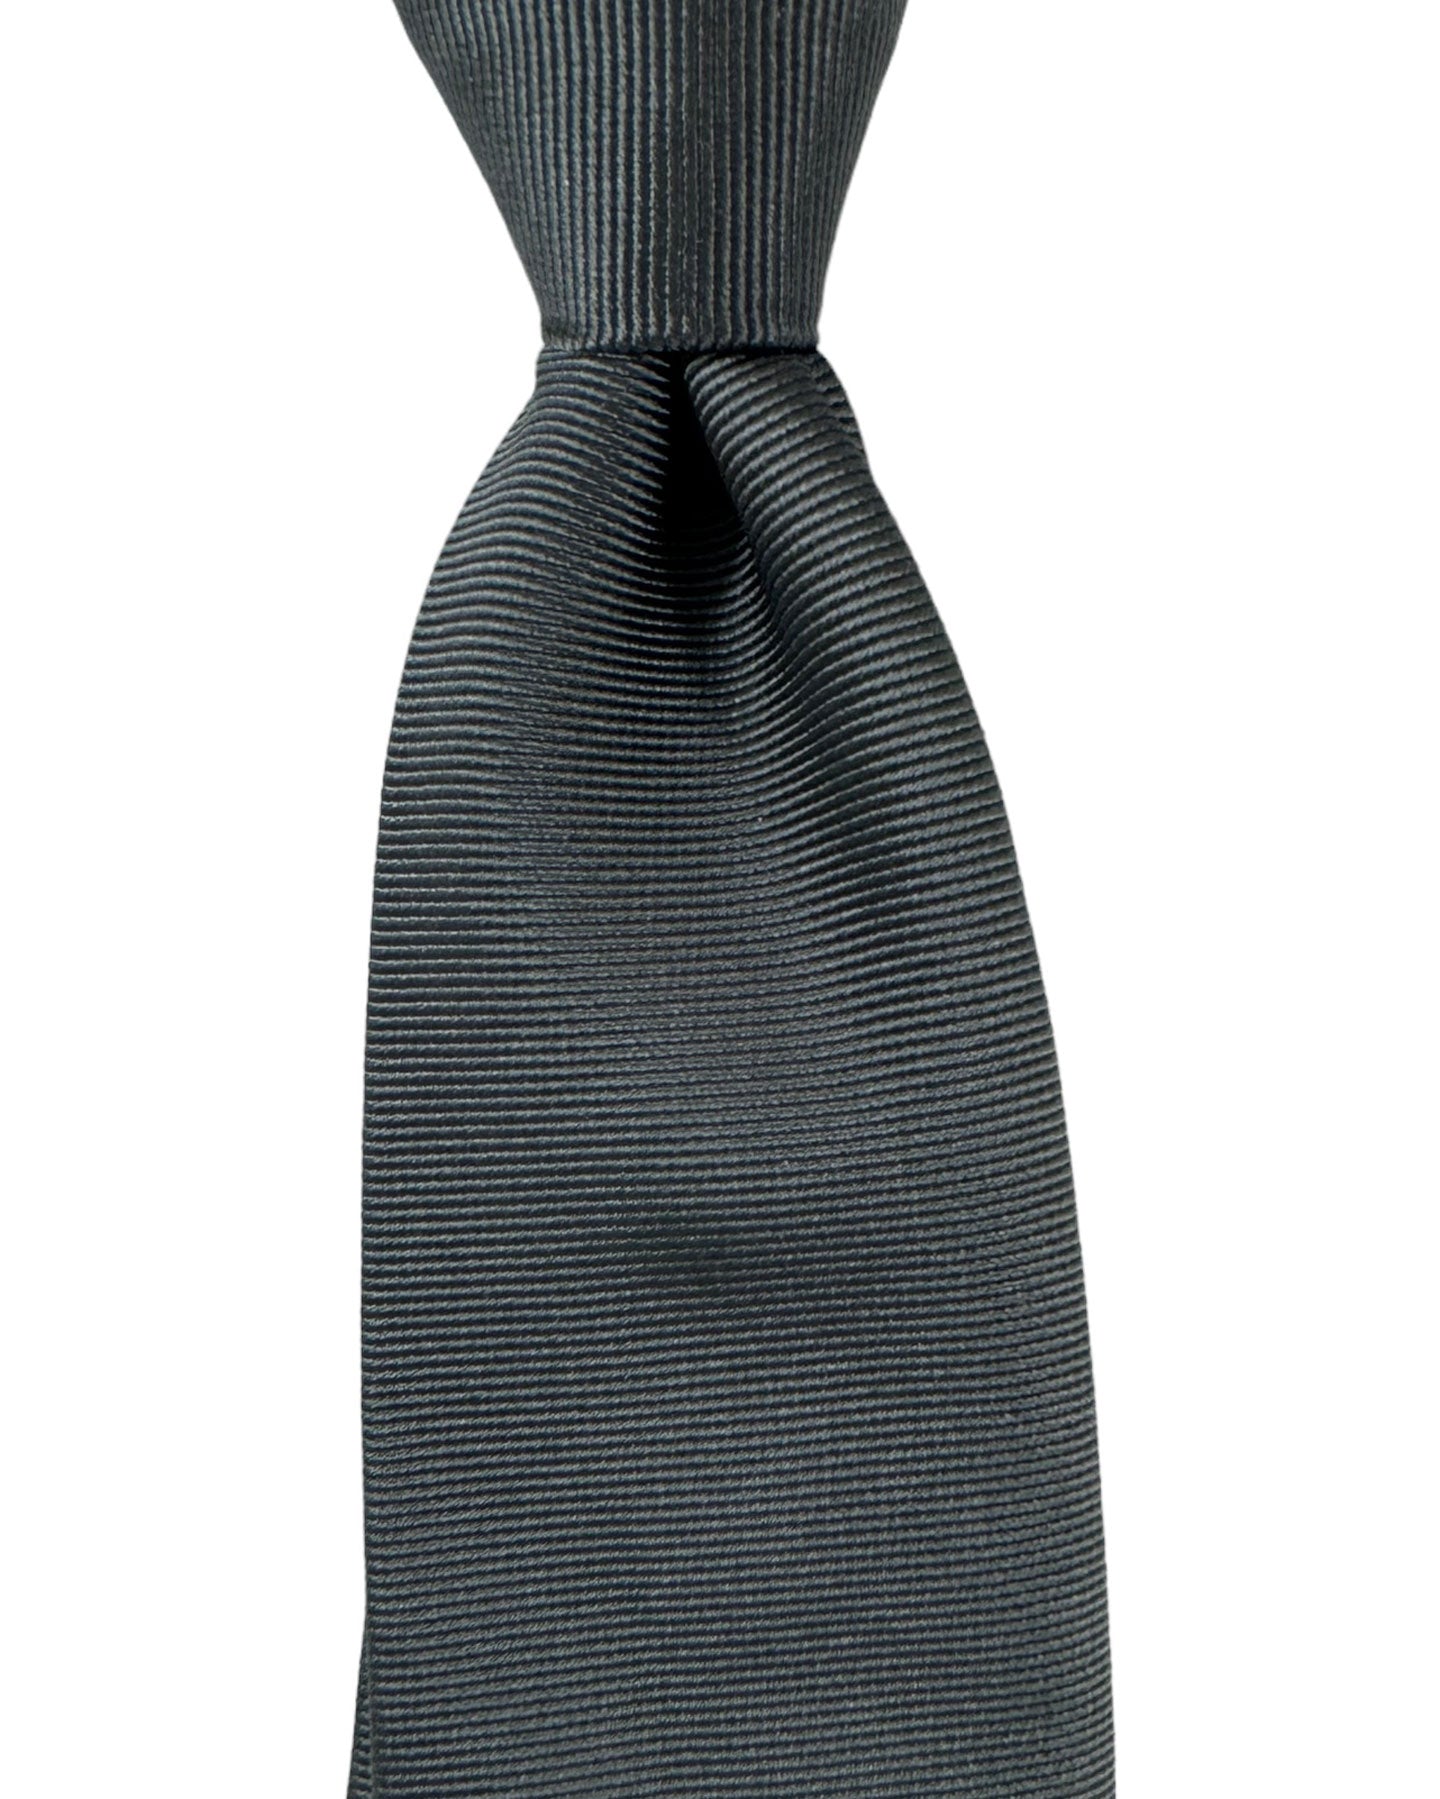 Armani Silk Tie Charcoal Gray Grosgrain Armani Collezioni